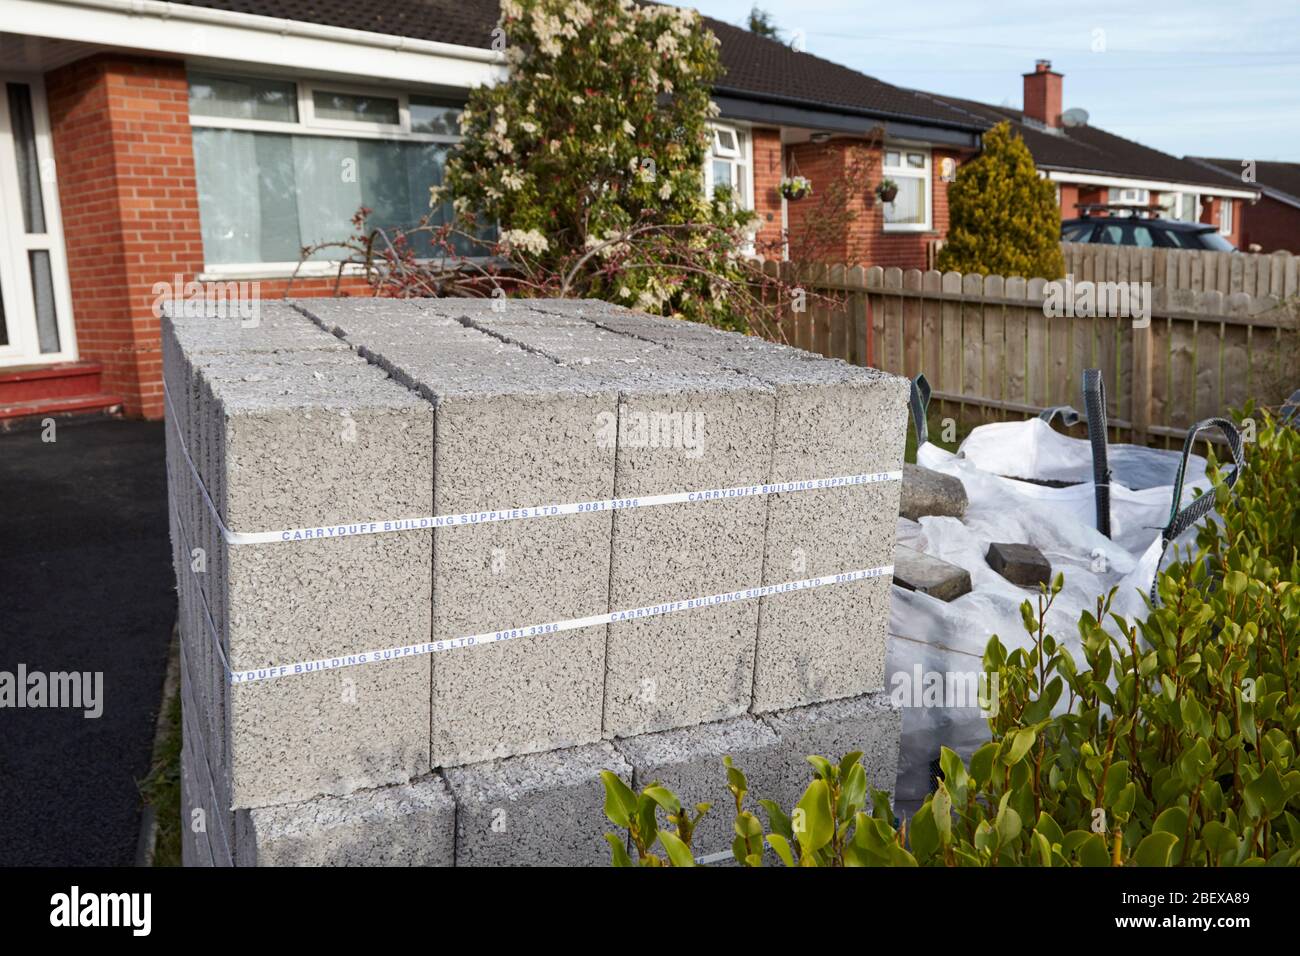 Lieferung von Baumaterialien einschließlich Betonklötze Sand und Steine in einem Garten eines Hauses während der covid Sperrung Newtownabbey Nordirland verlassen Stockfoto